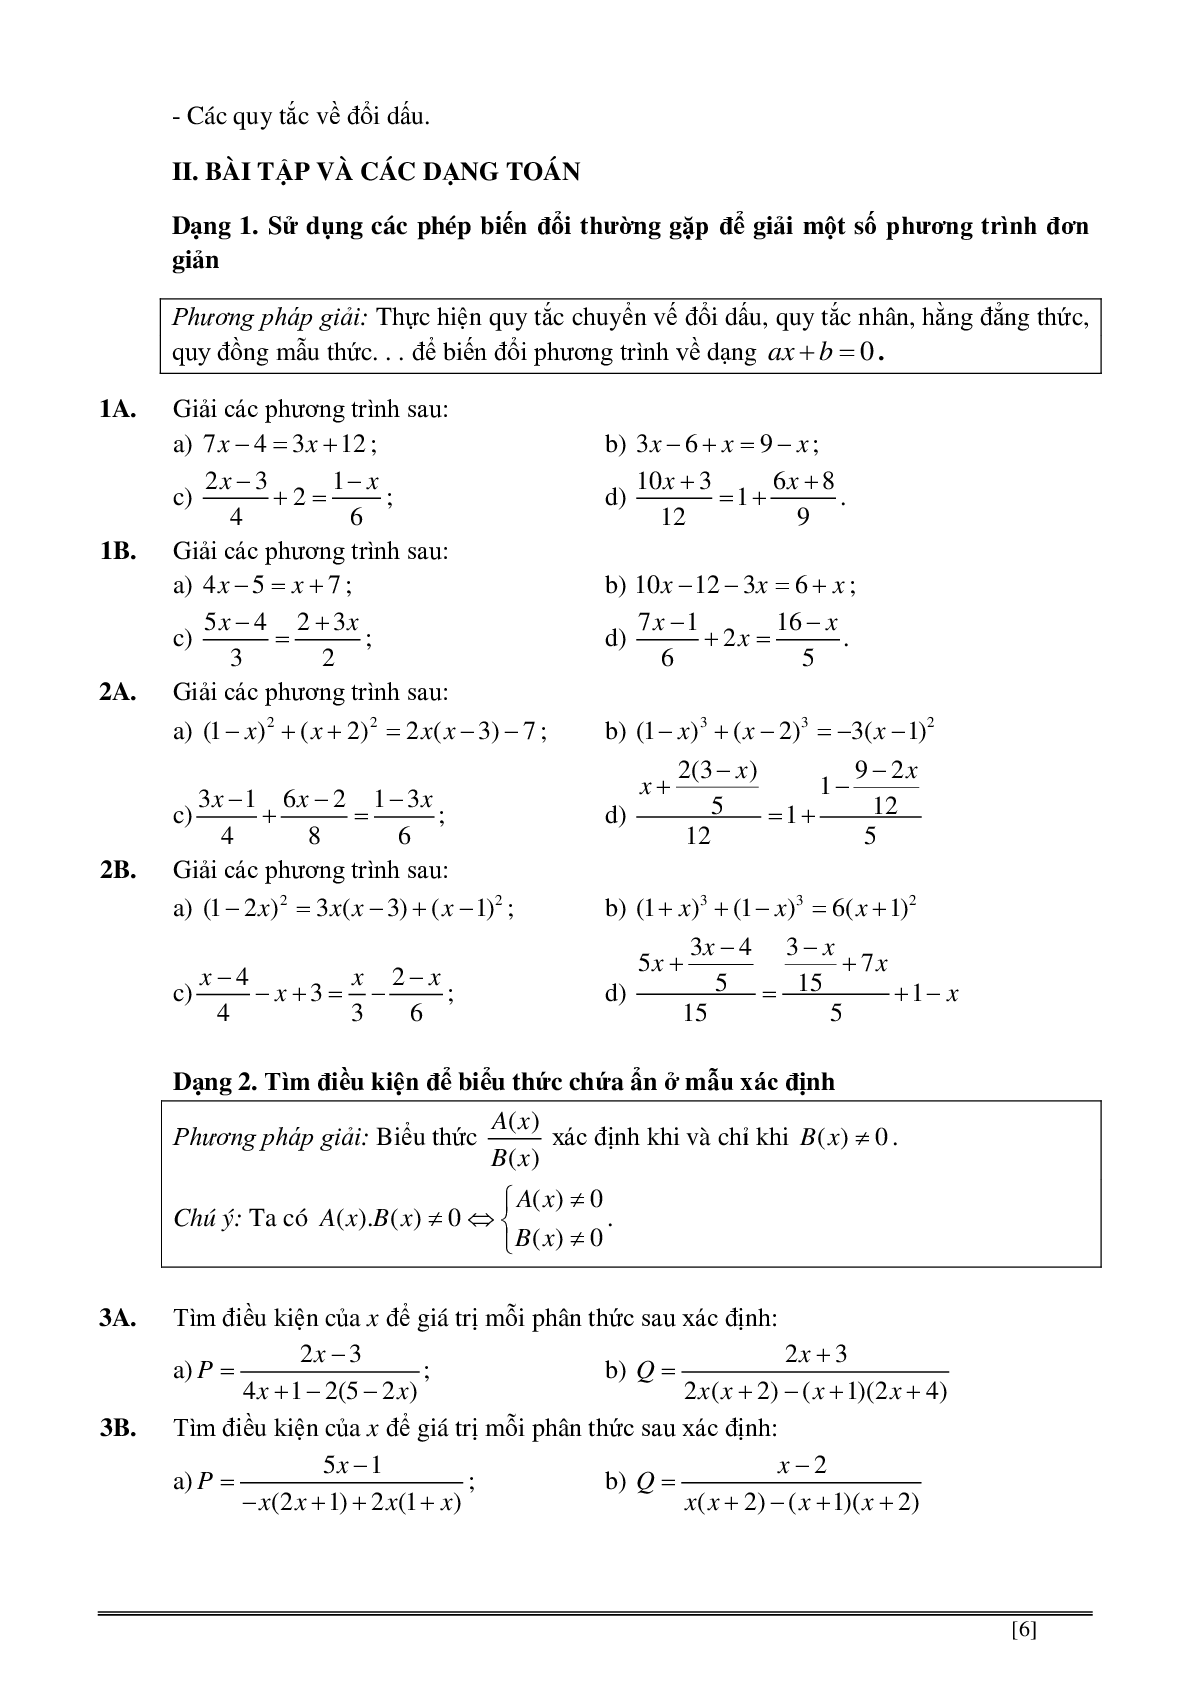 Củng cố và ôn luyện toán 8 kì 2 trang 139-186 (trang 6)